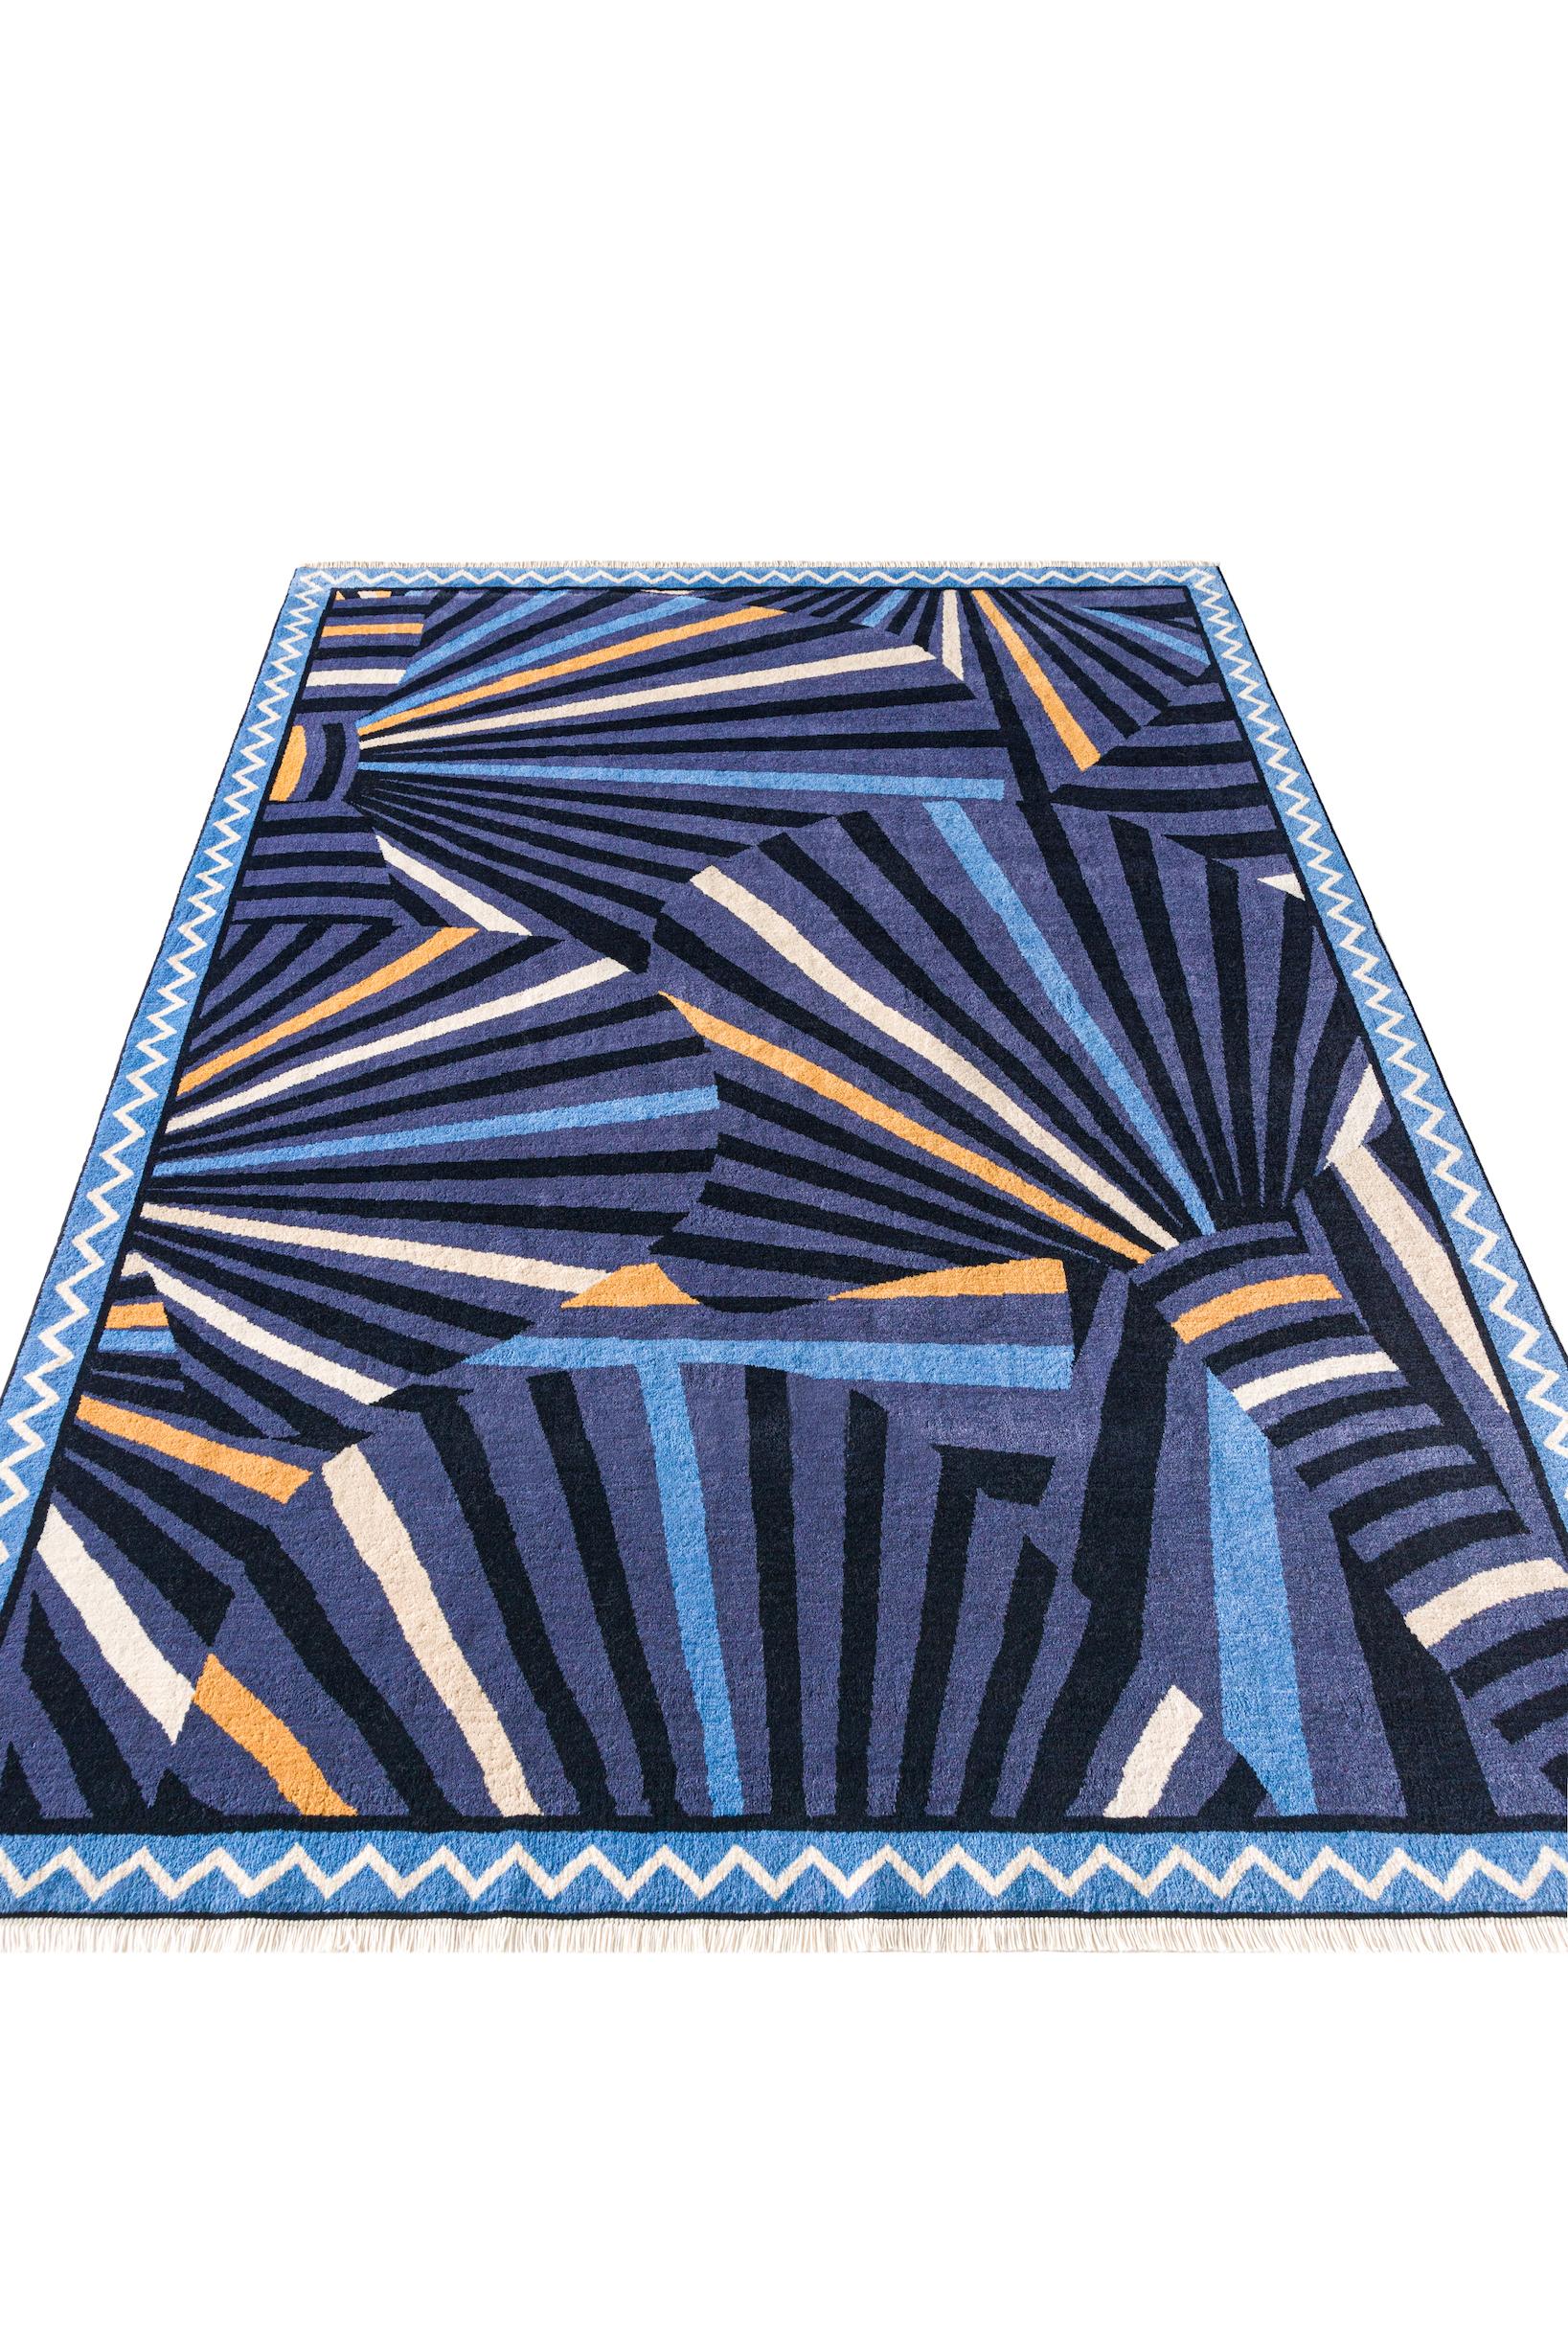 Über den Teppich:
Dieser handgeknüpfte Teppich hat 160.000 Knoten pro Quadratmeter, eine Doppelknotenkonstruktion und besteht aus 100 % neuseeländischer Wolle für das Obermaterial und 100 % ägyptischer Baumwolle für Kette und Schuss. Die Florhöhe